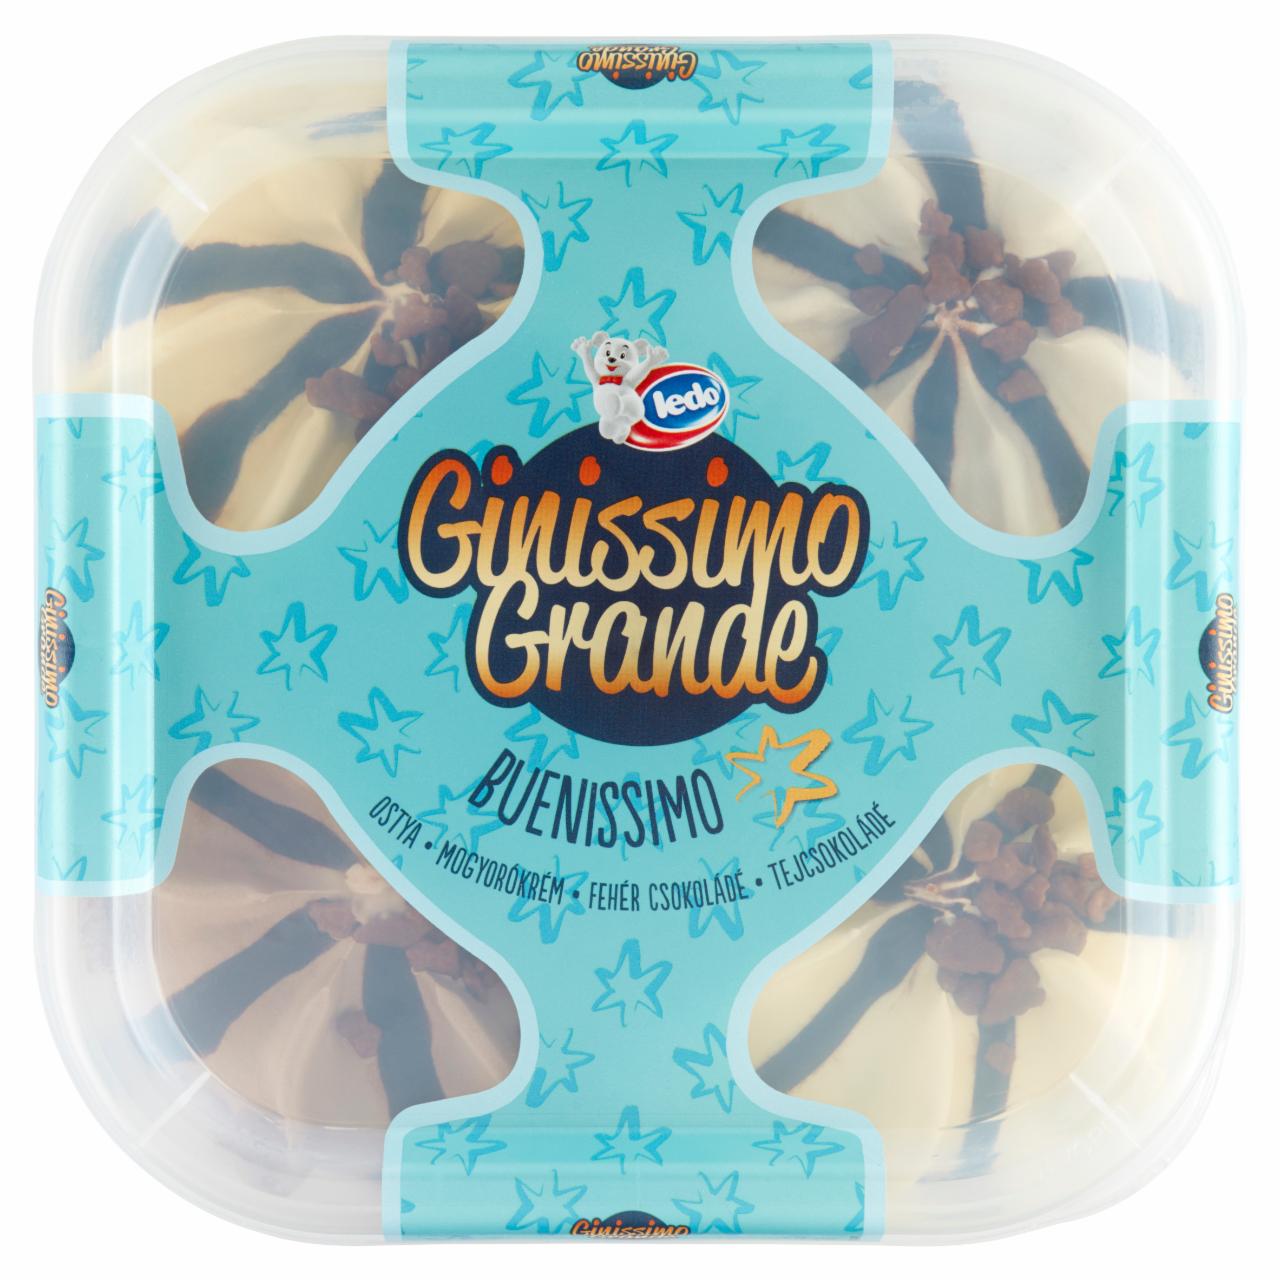 Képek - Ledo Ginissimo Grande Buenissimo fehércsokoládés-tejcsokoládés, mogyorós-ostya ízű jégkrém 1650 ml